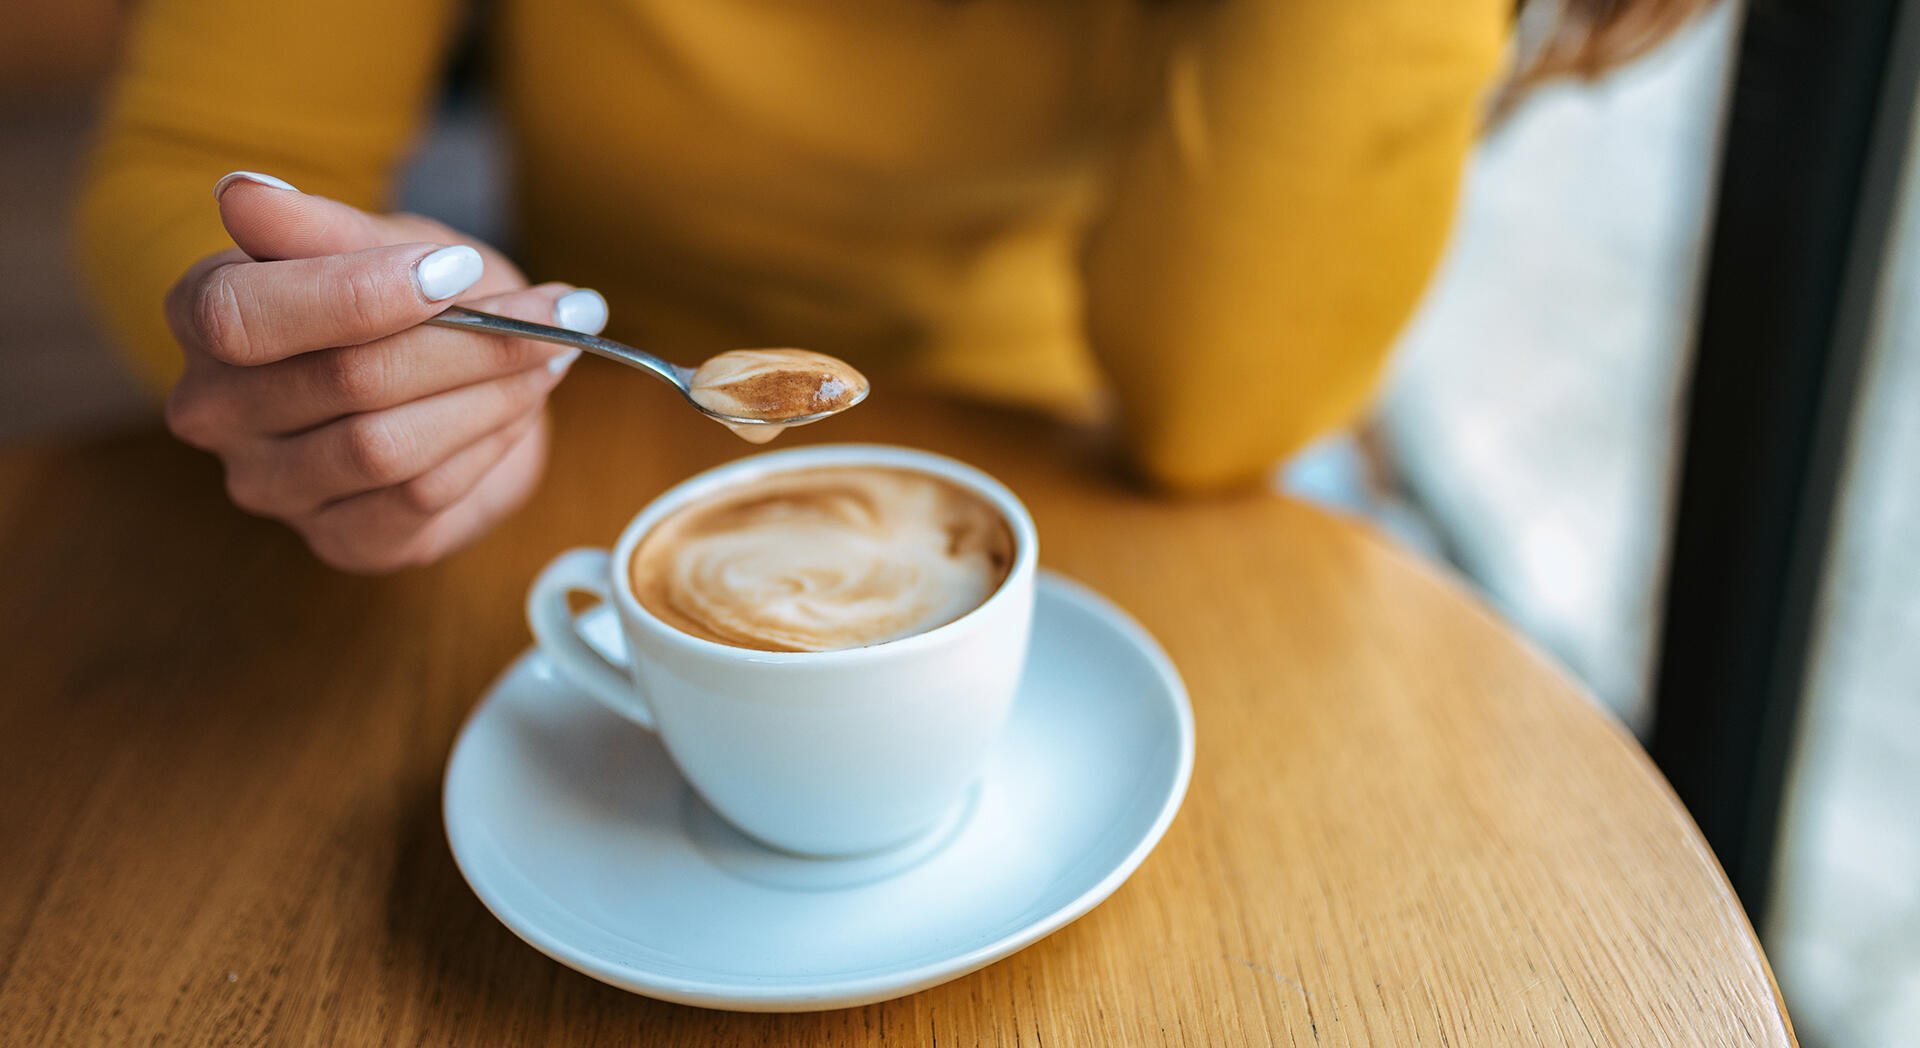 Kaffee ist ein beliebtes Lifestyleprodukt, das den Alltag vieler Menschen bereichert. Doch das könnte in Zukunft vorbei sein.